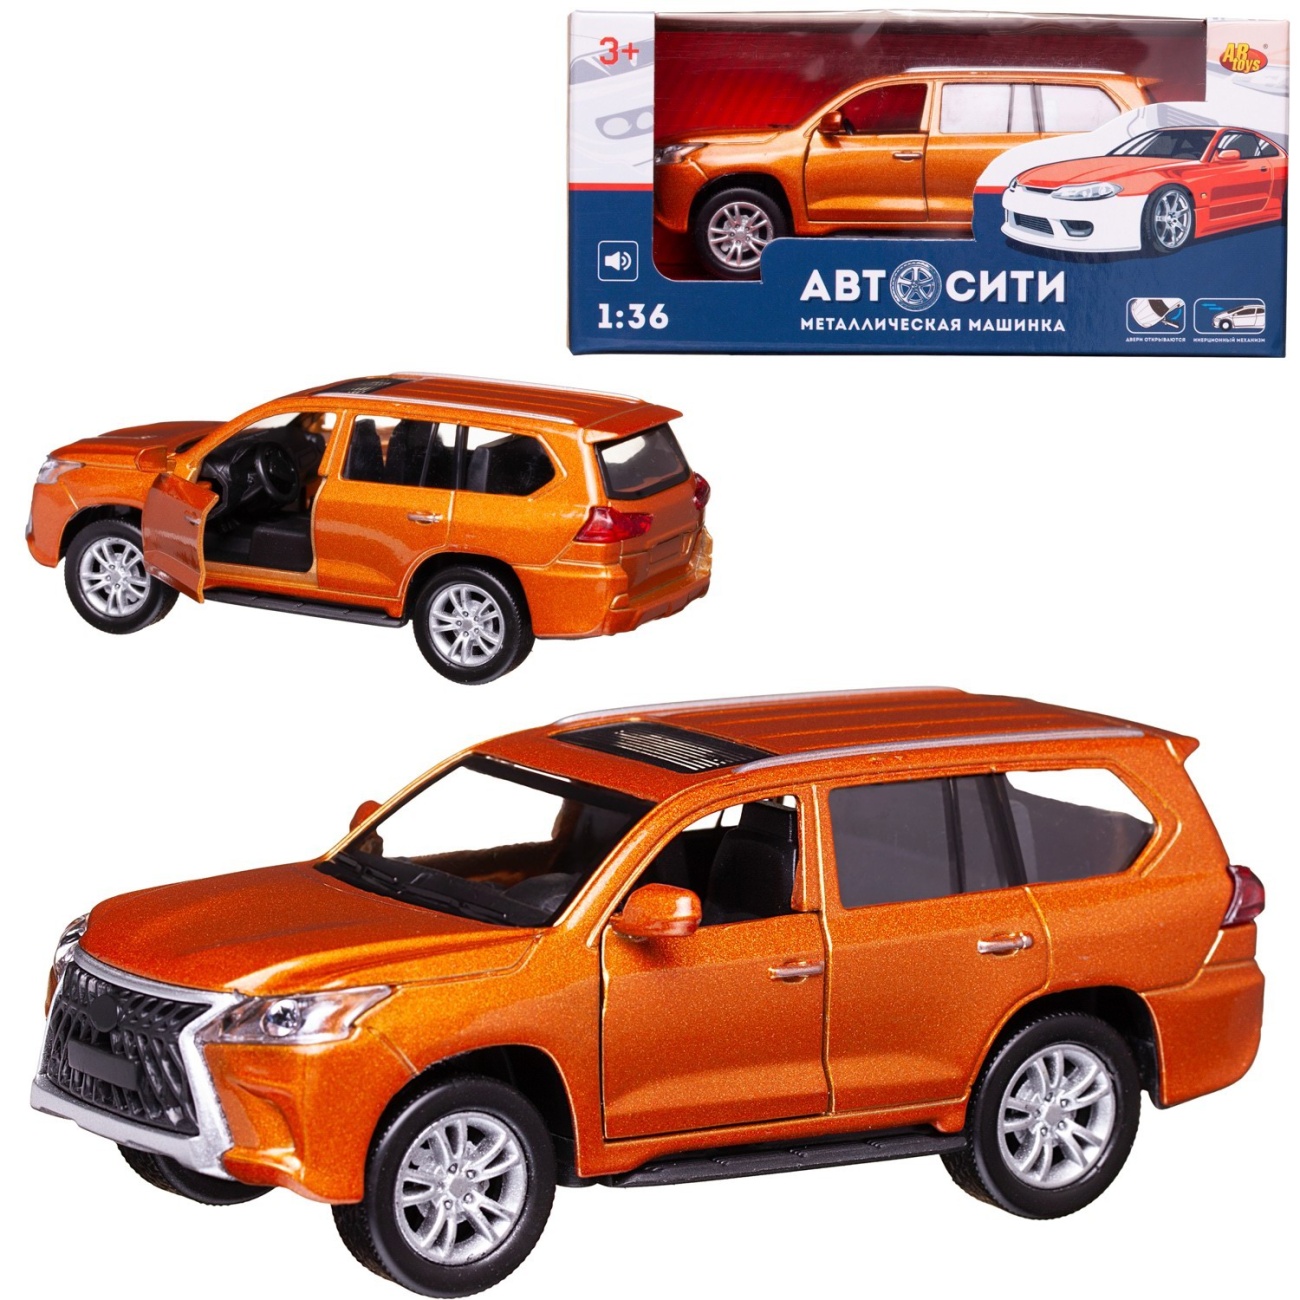 Машинка металл Abtoys АвтоСити 1:36 Кроссовер семейный инерция, двери откр., оранжевый свет/звук C-00520/оранжевый